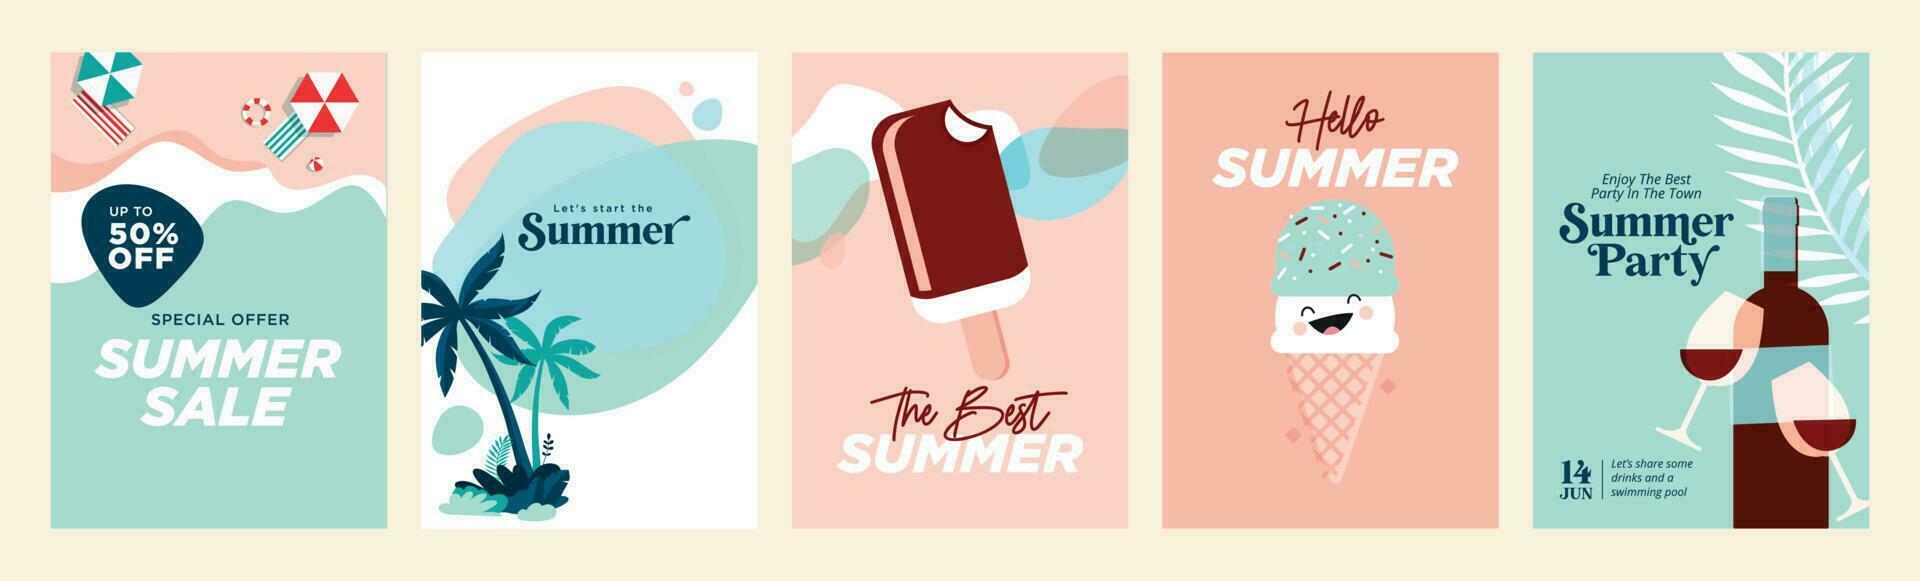 zomer uitverkoop banners en affiches. reeks van vector illustraties voor web en sociaal media spandoeken, afdrukken materiaal, nieuwsbrief ontwerpen, bonnen, marketing.